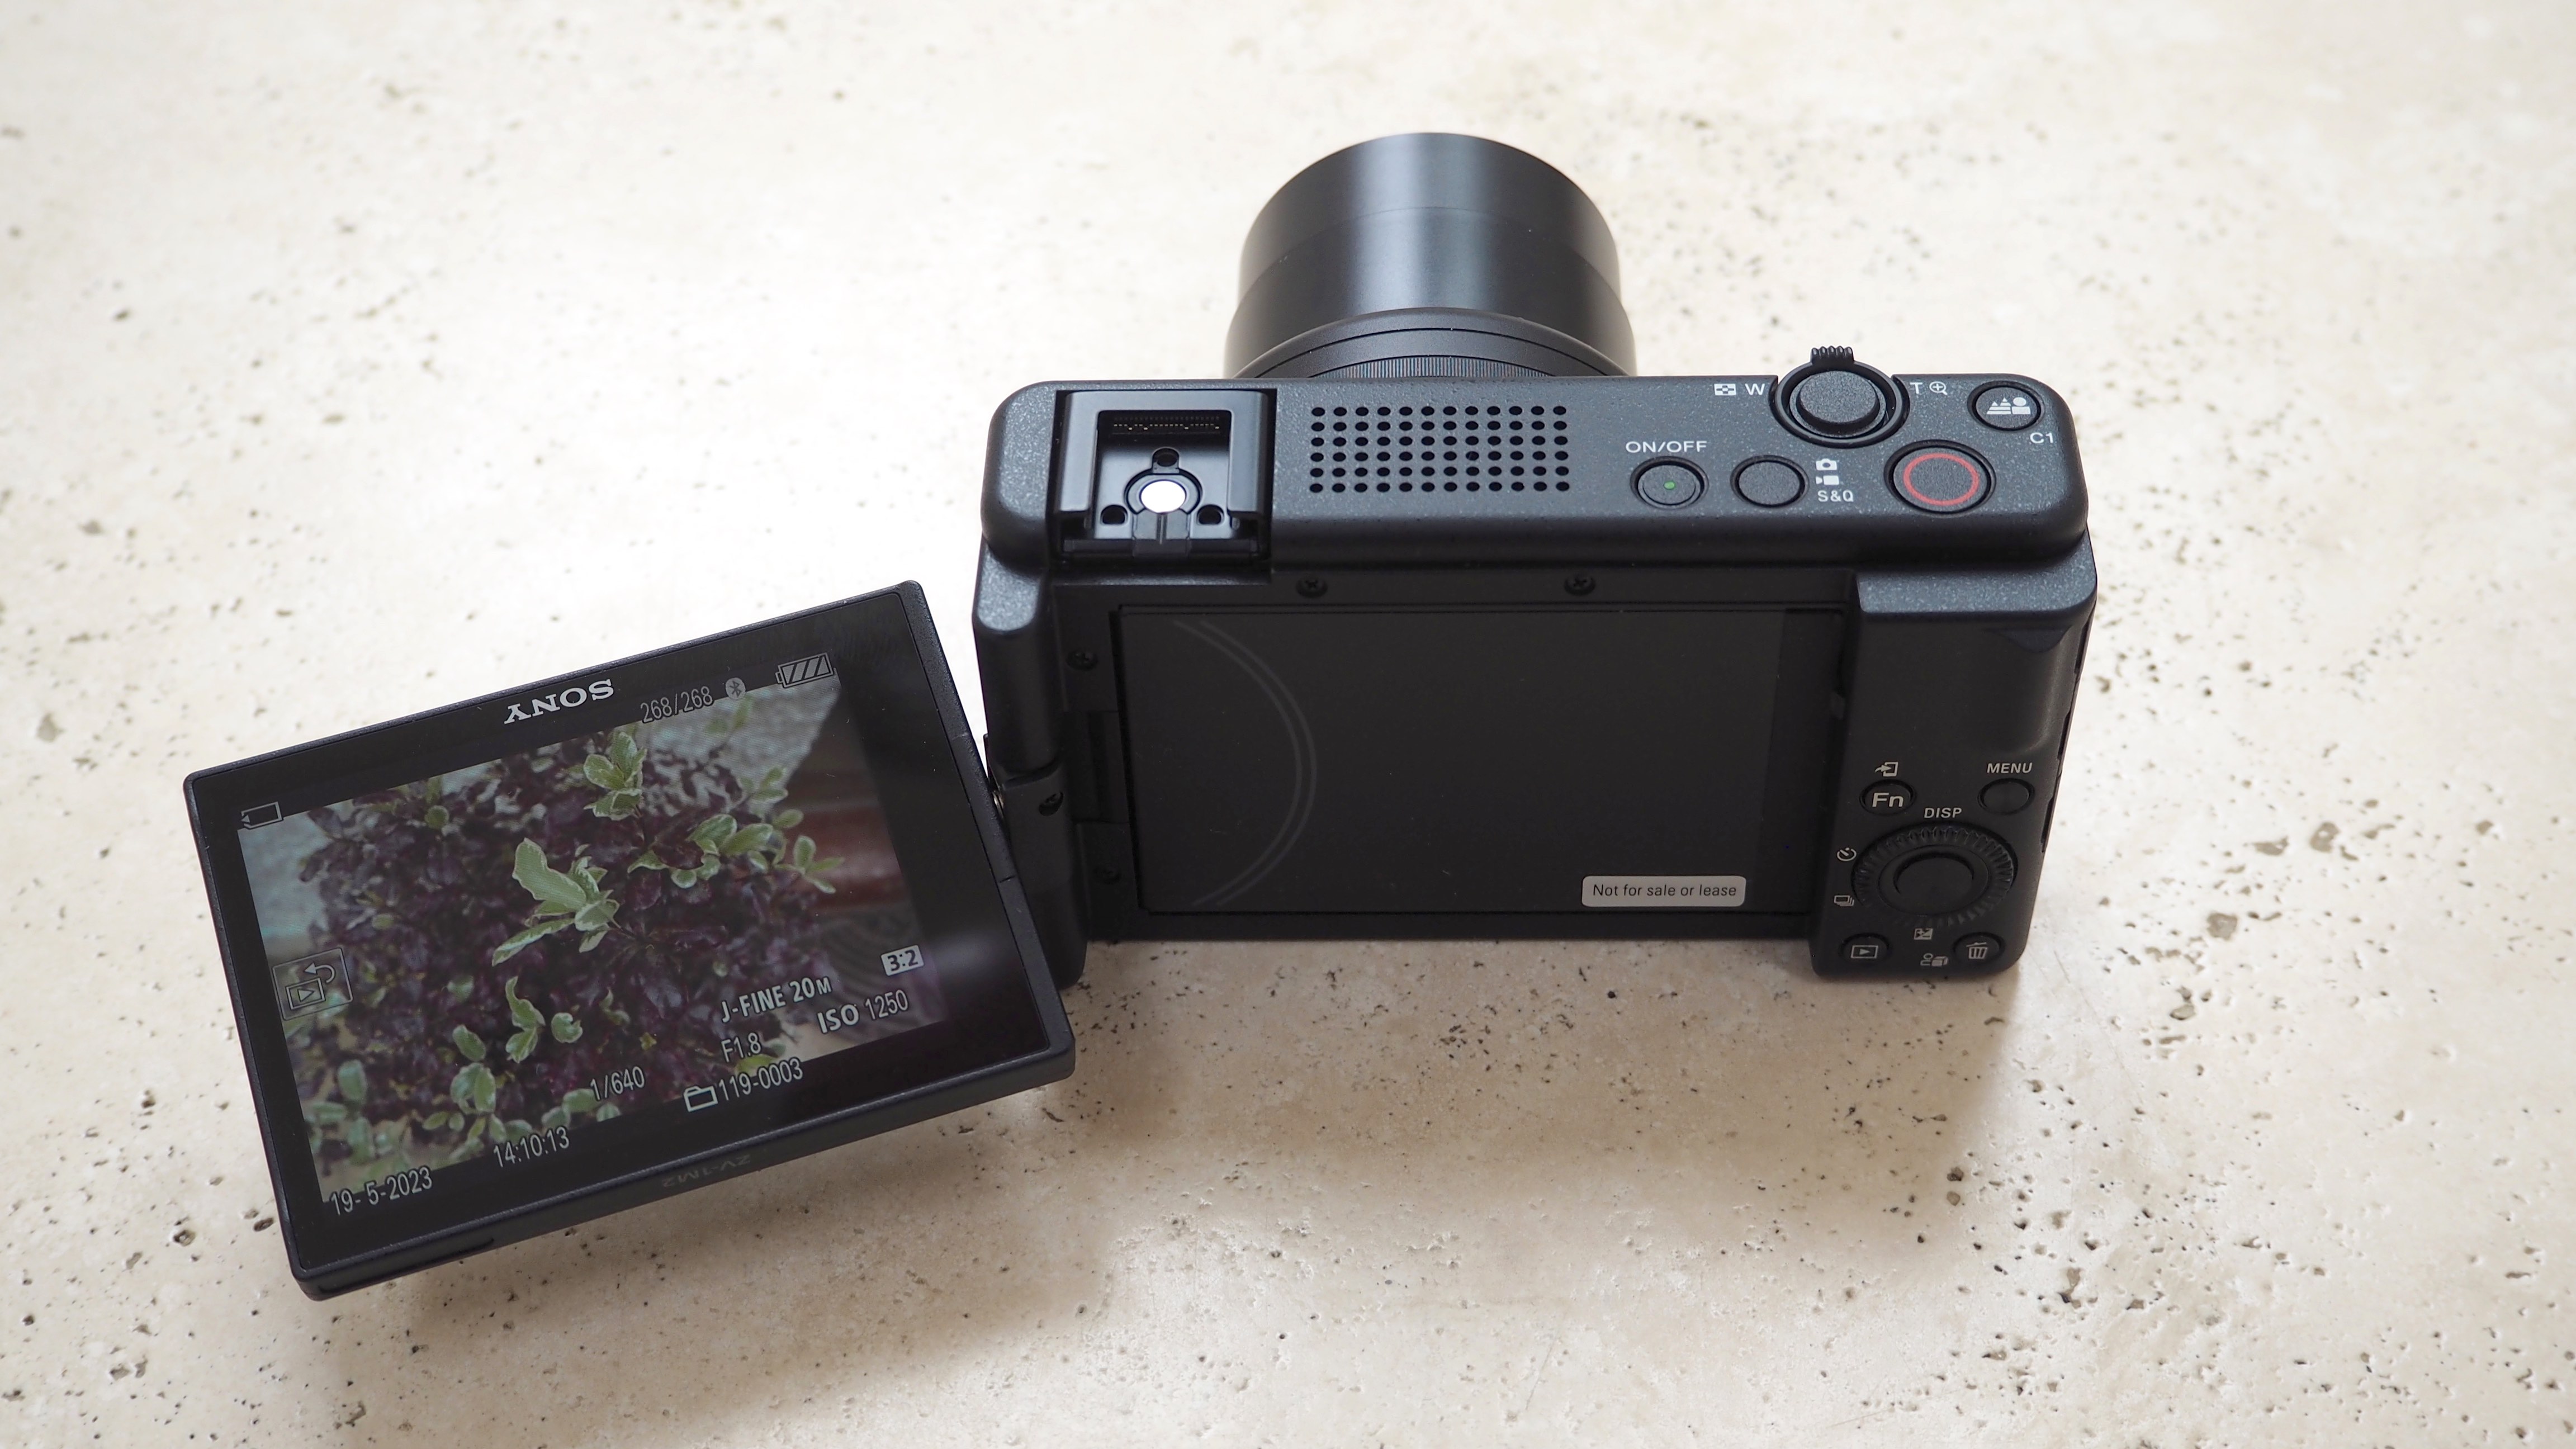 Sony Камера ЗВ-1 II на мраморном столе с откинутым экраном